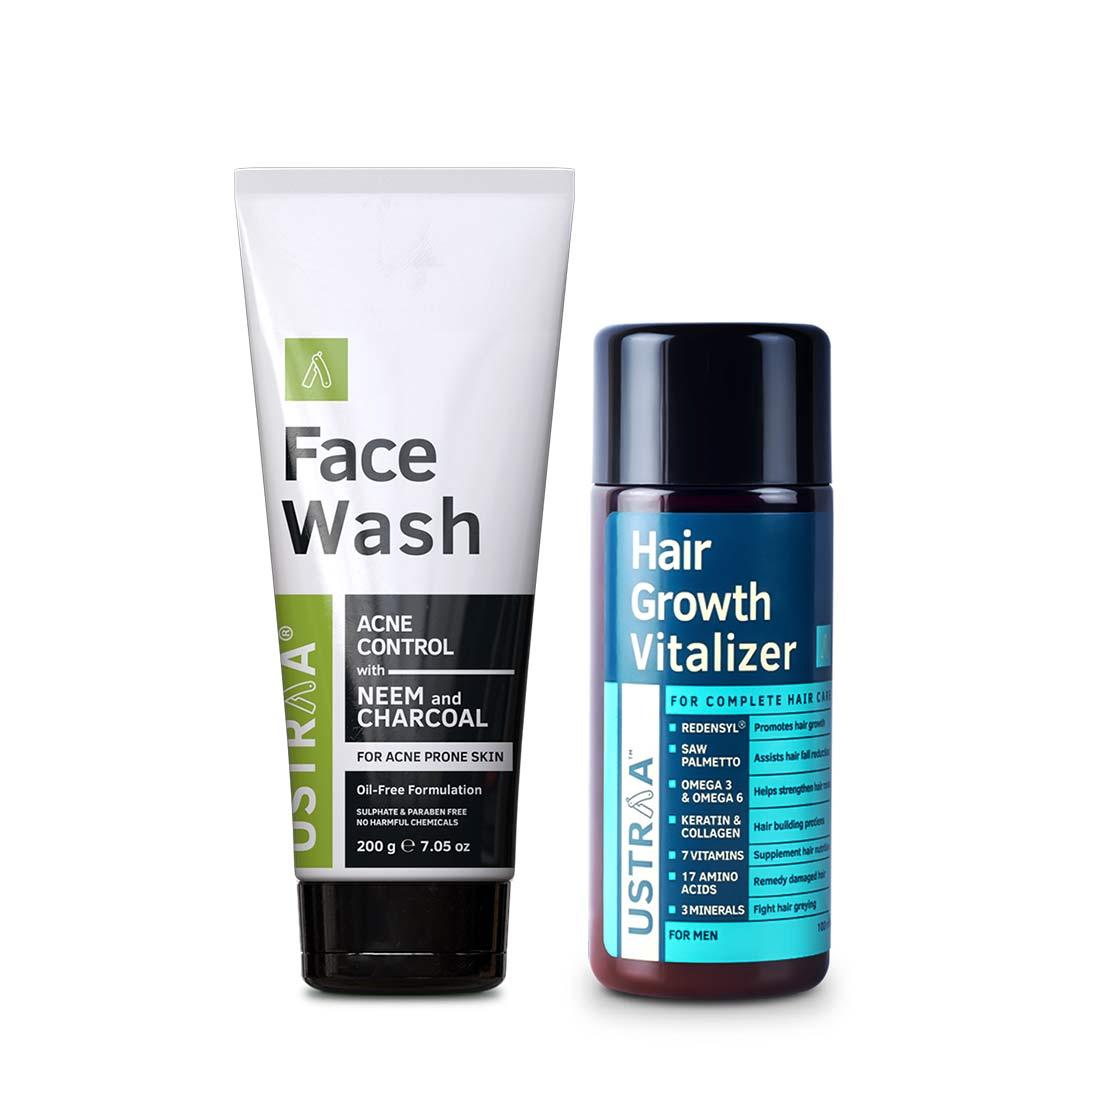 Hair Growth Vitalizer & Neem & Charcoal Facewash